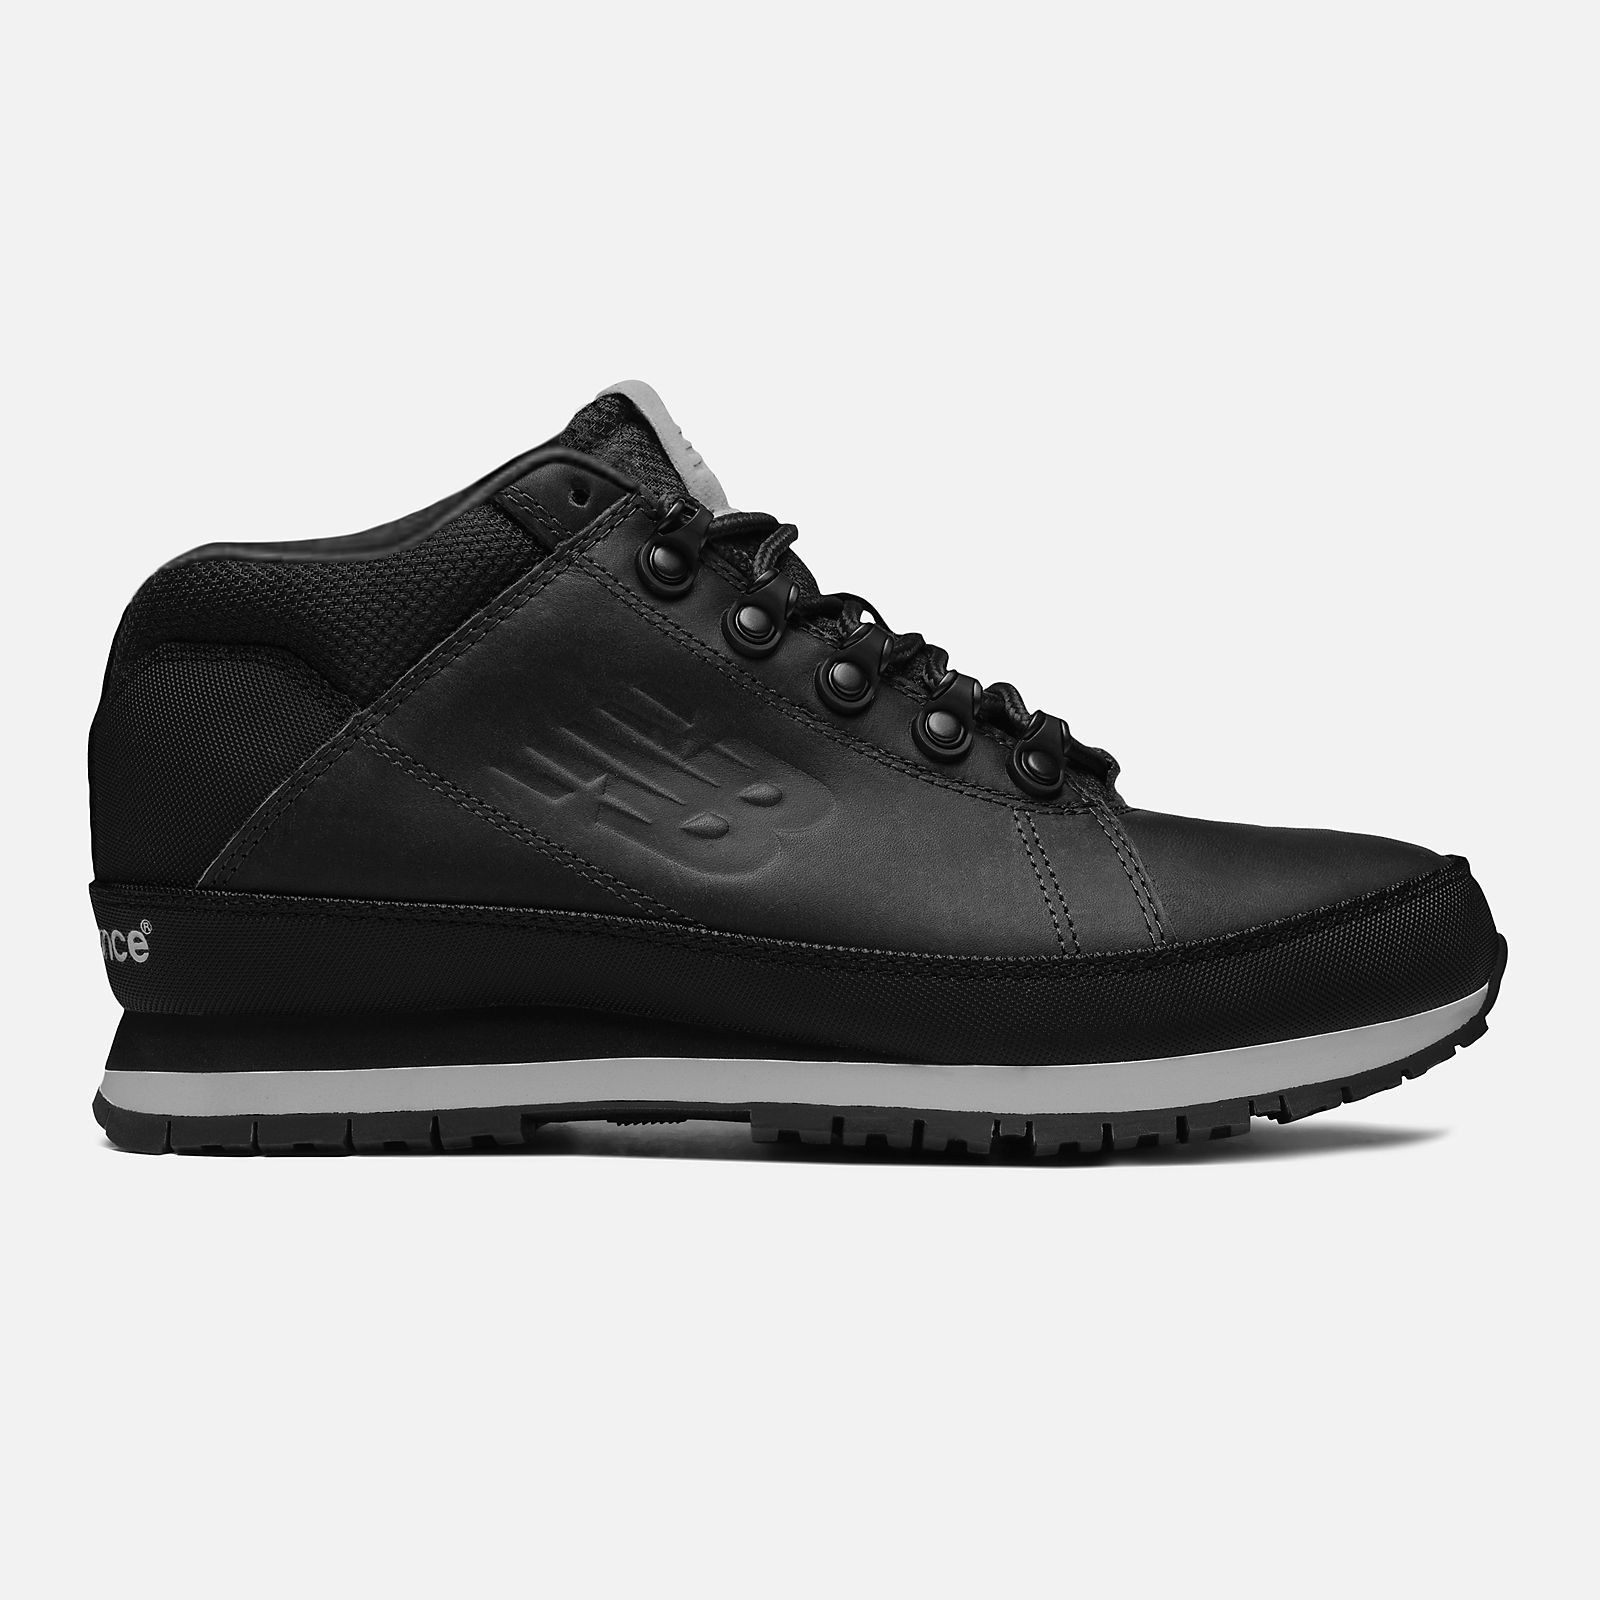 New Balance 754 Leather цвет: черный – купить оригинальный товар в ...